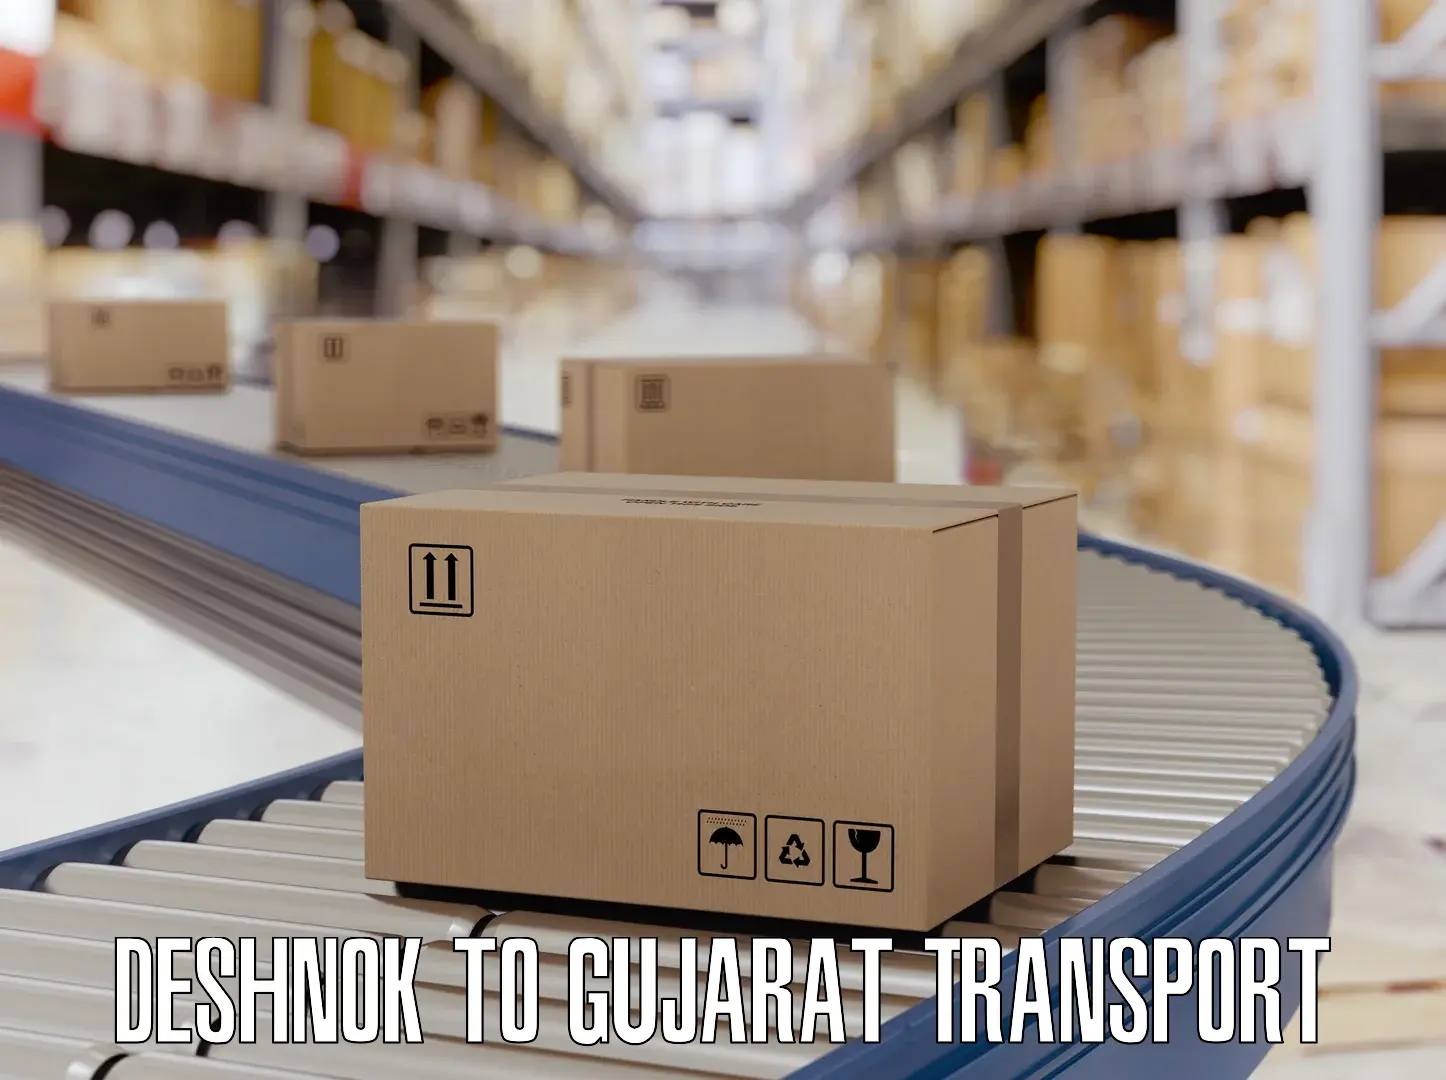 Container transport service Deshnok to Madhavpur